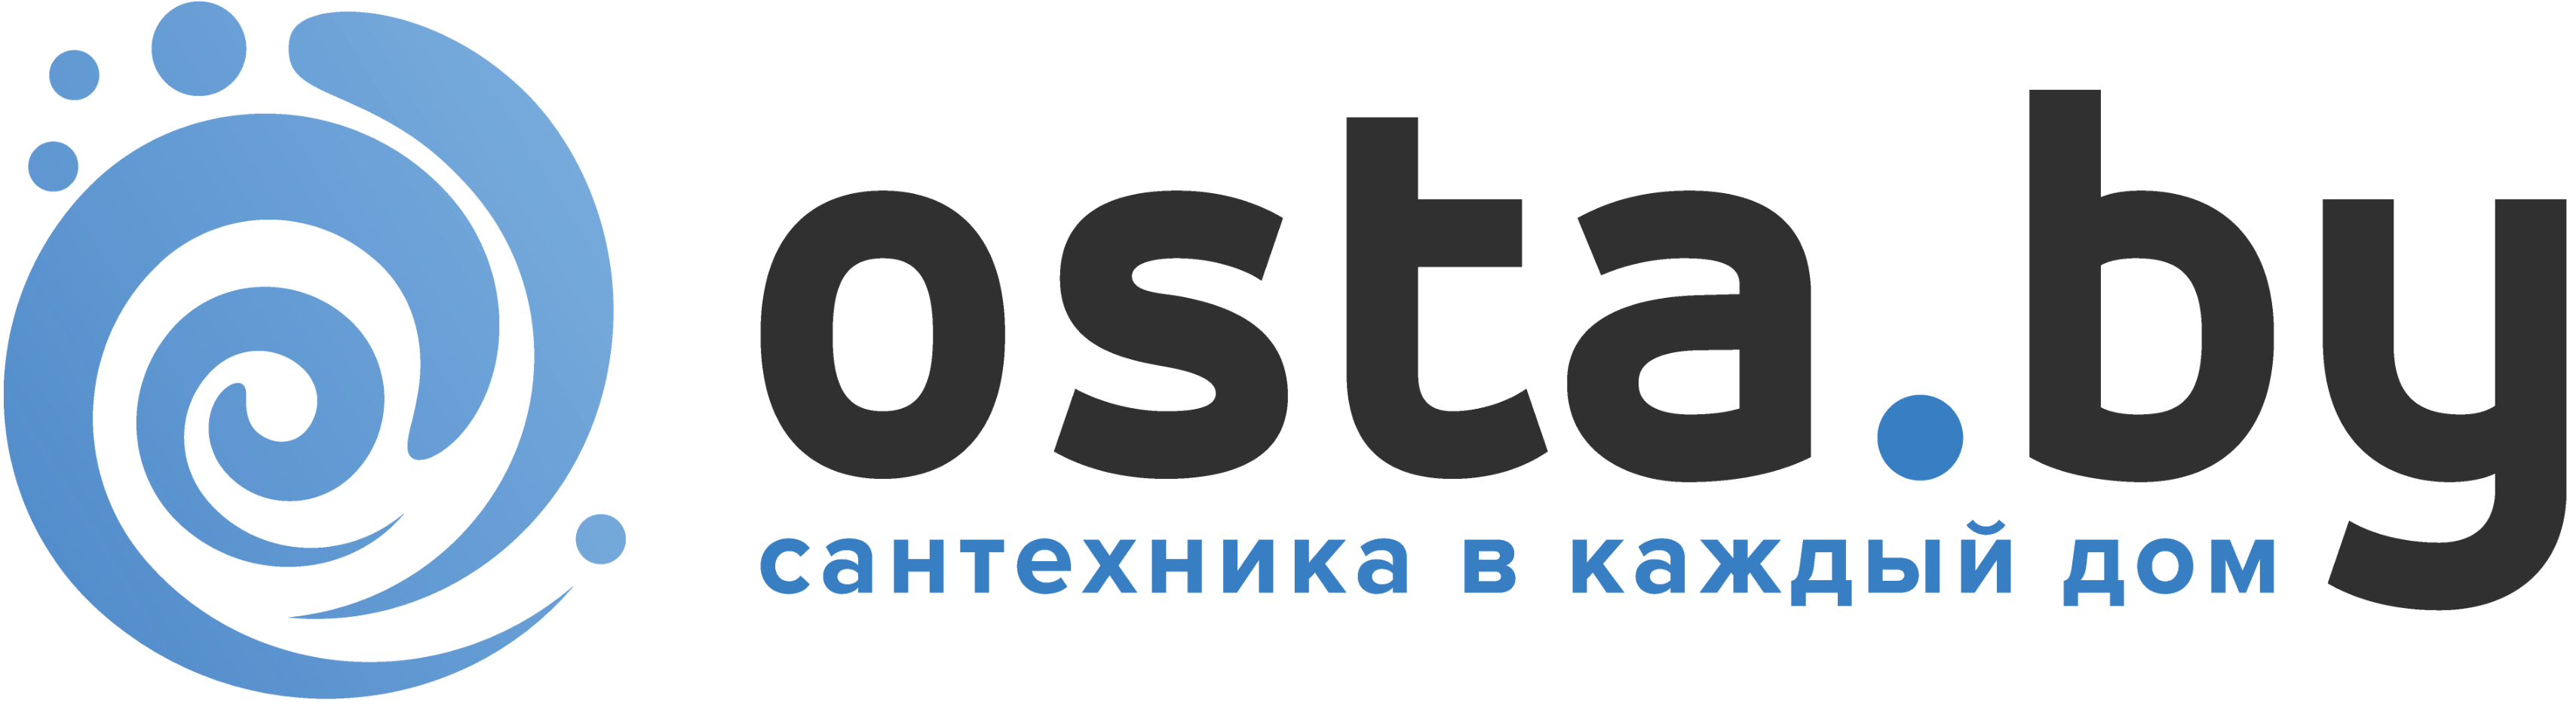 Интернет-магазин сантехники OSTA.BY